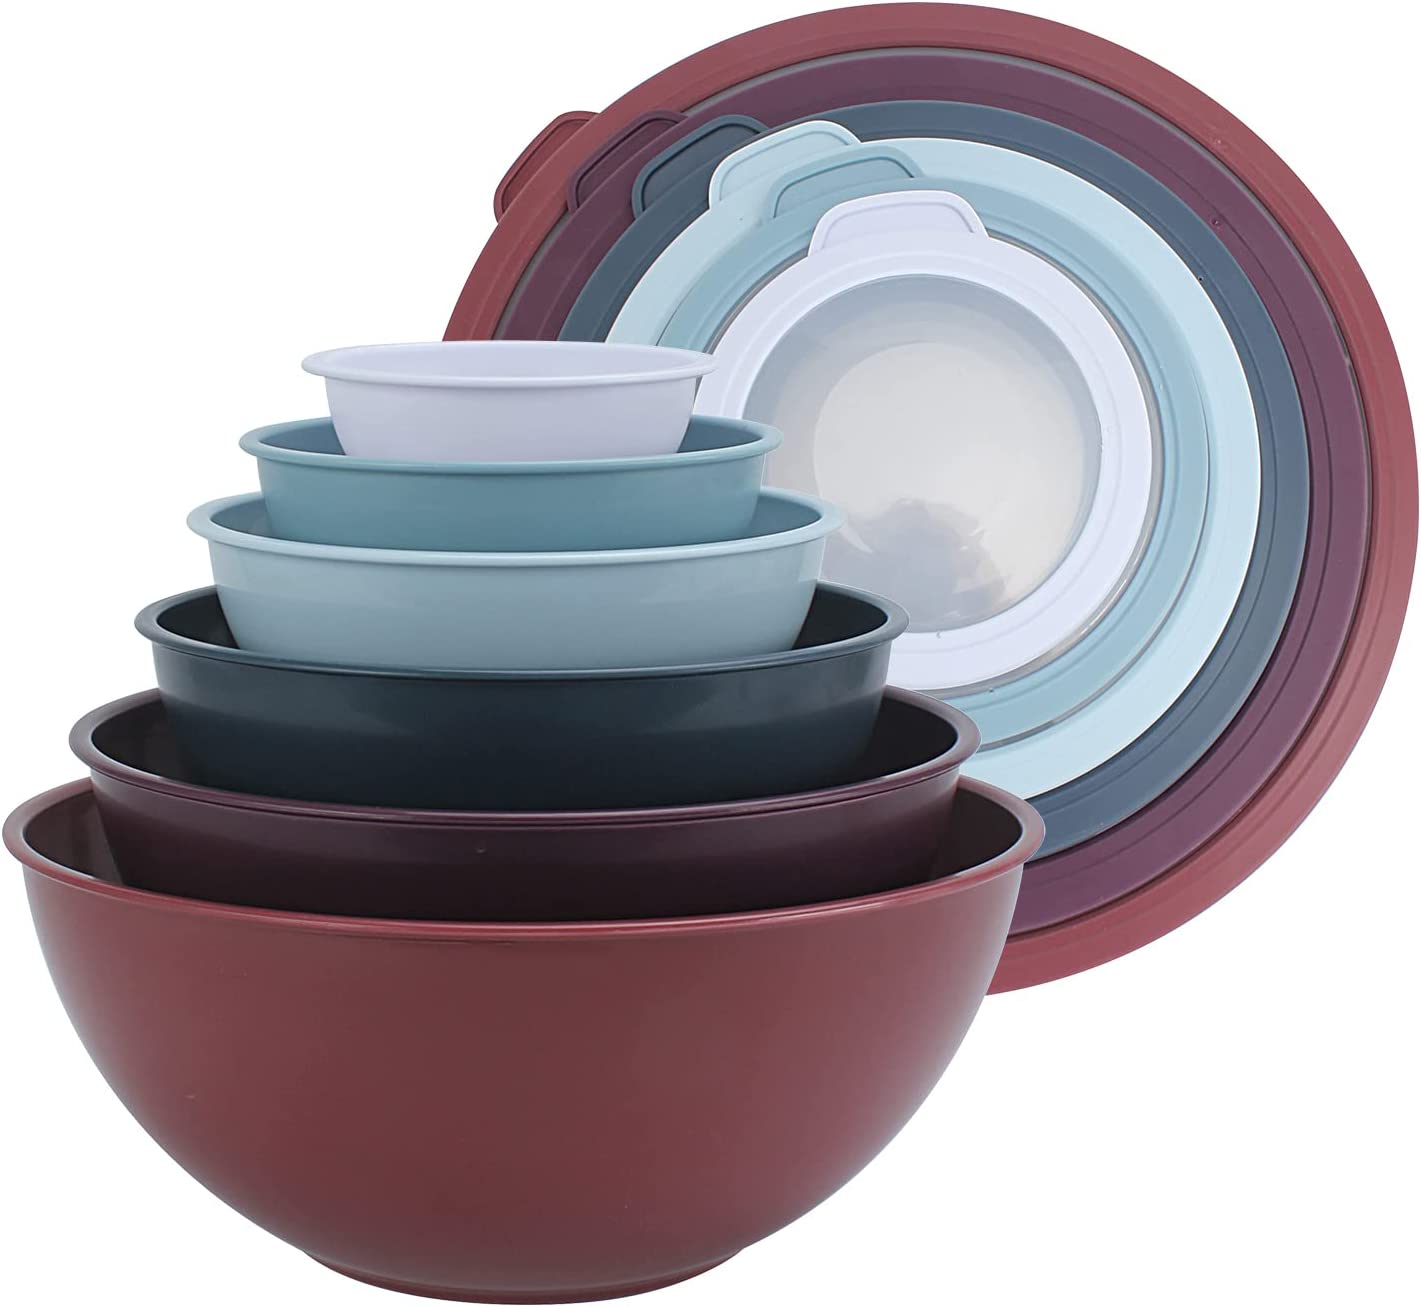 12 Piece Plastic Nesting Bowls, Set Includes 6 Prep Bowls and 6 Lids